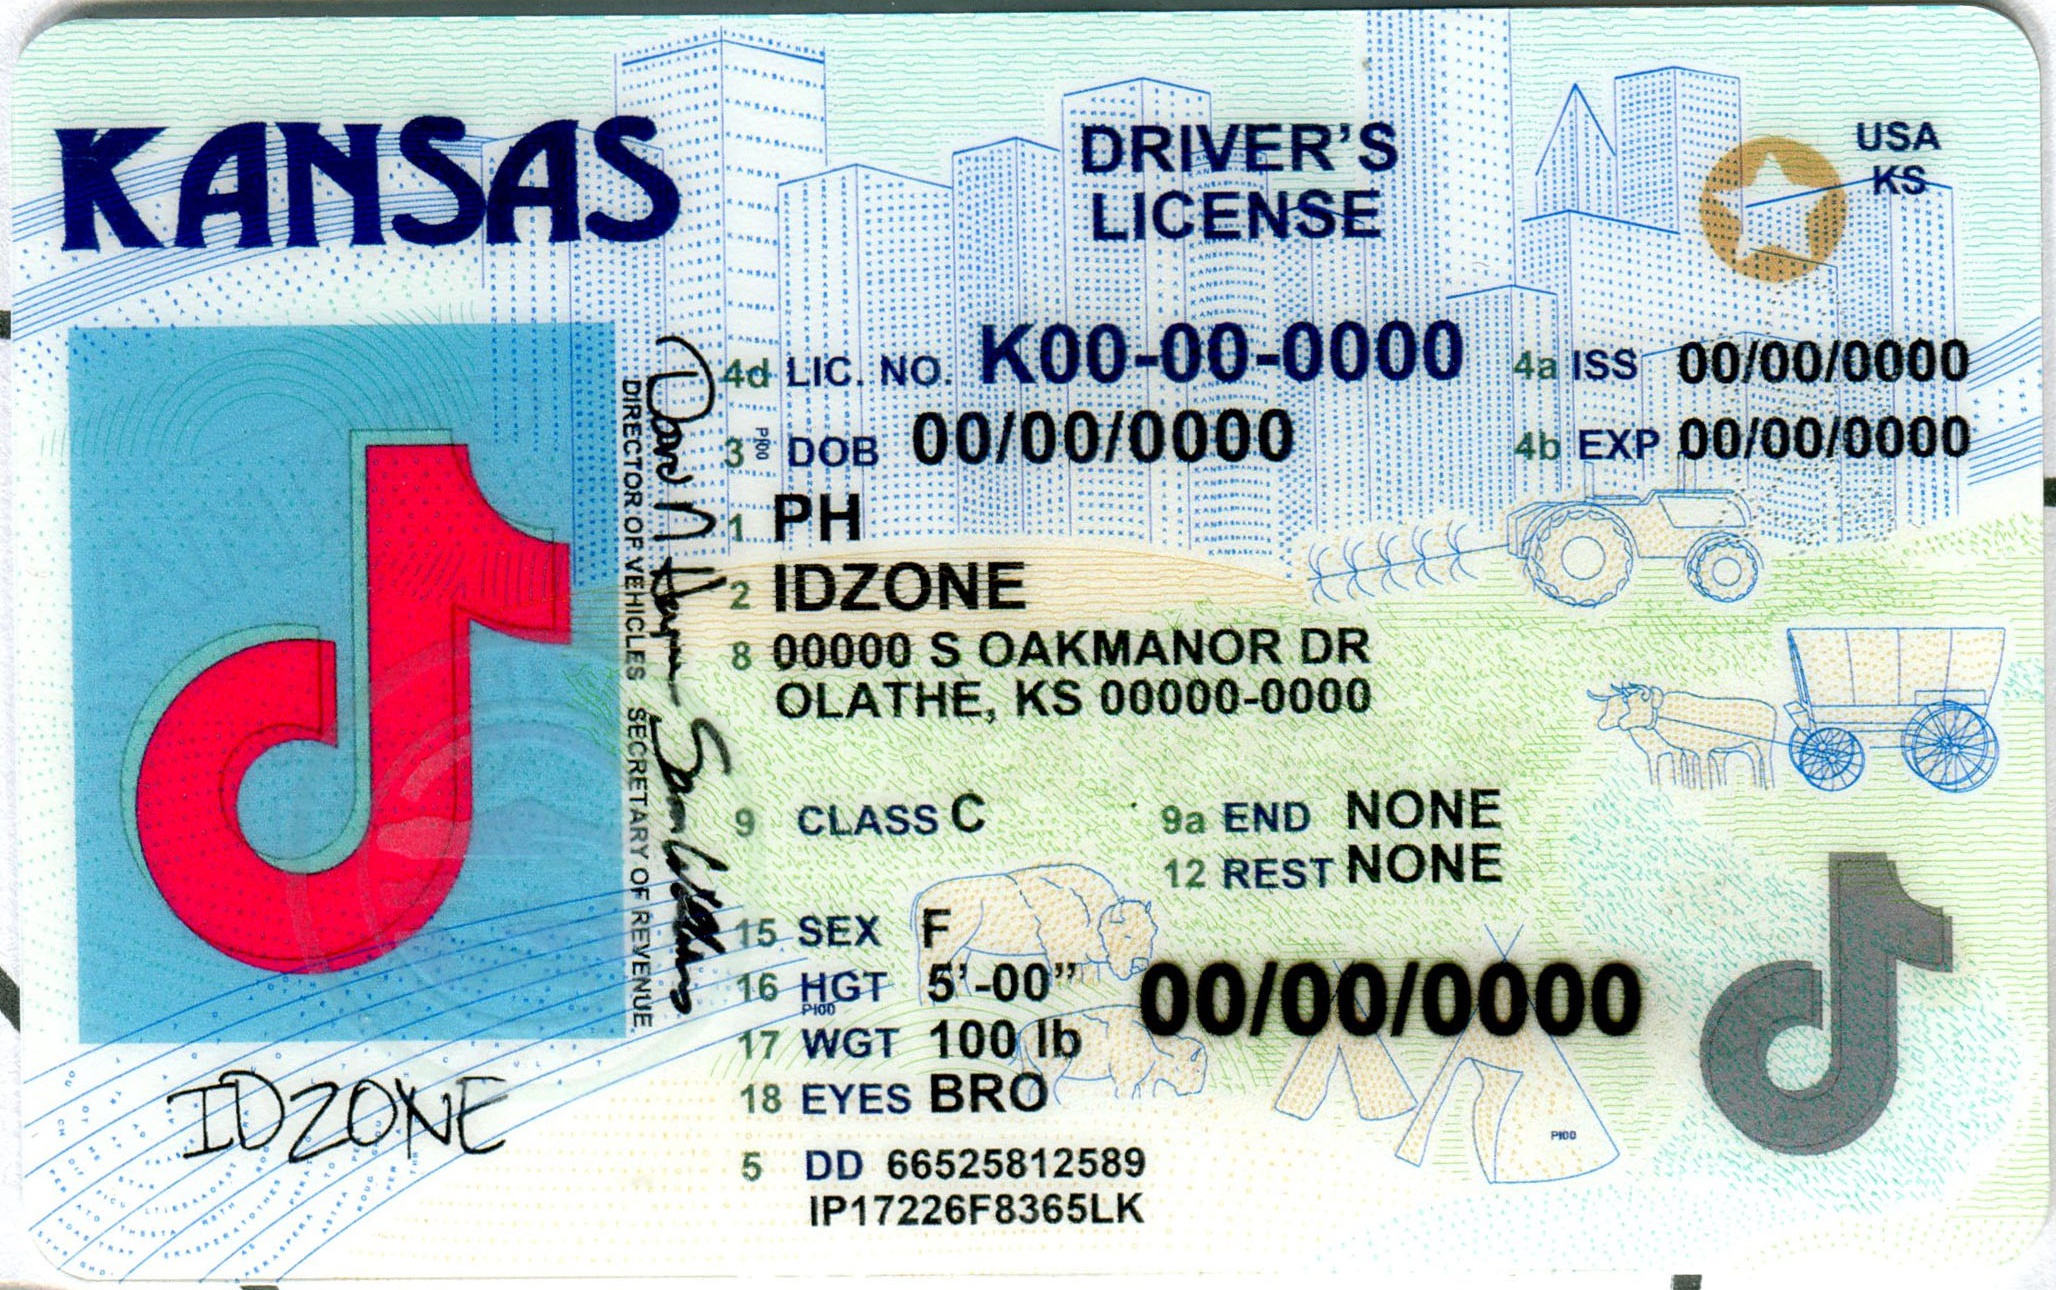 KANSAS-New buy fake id